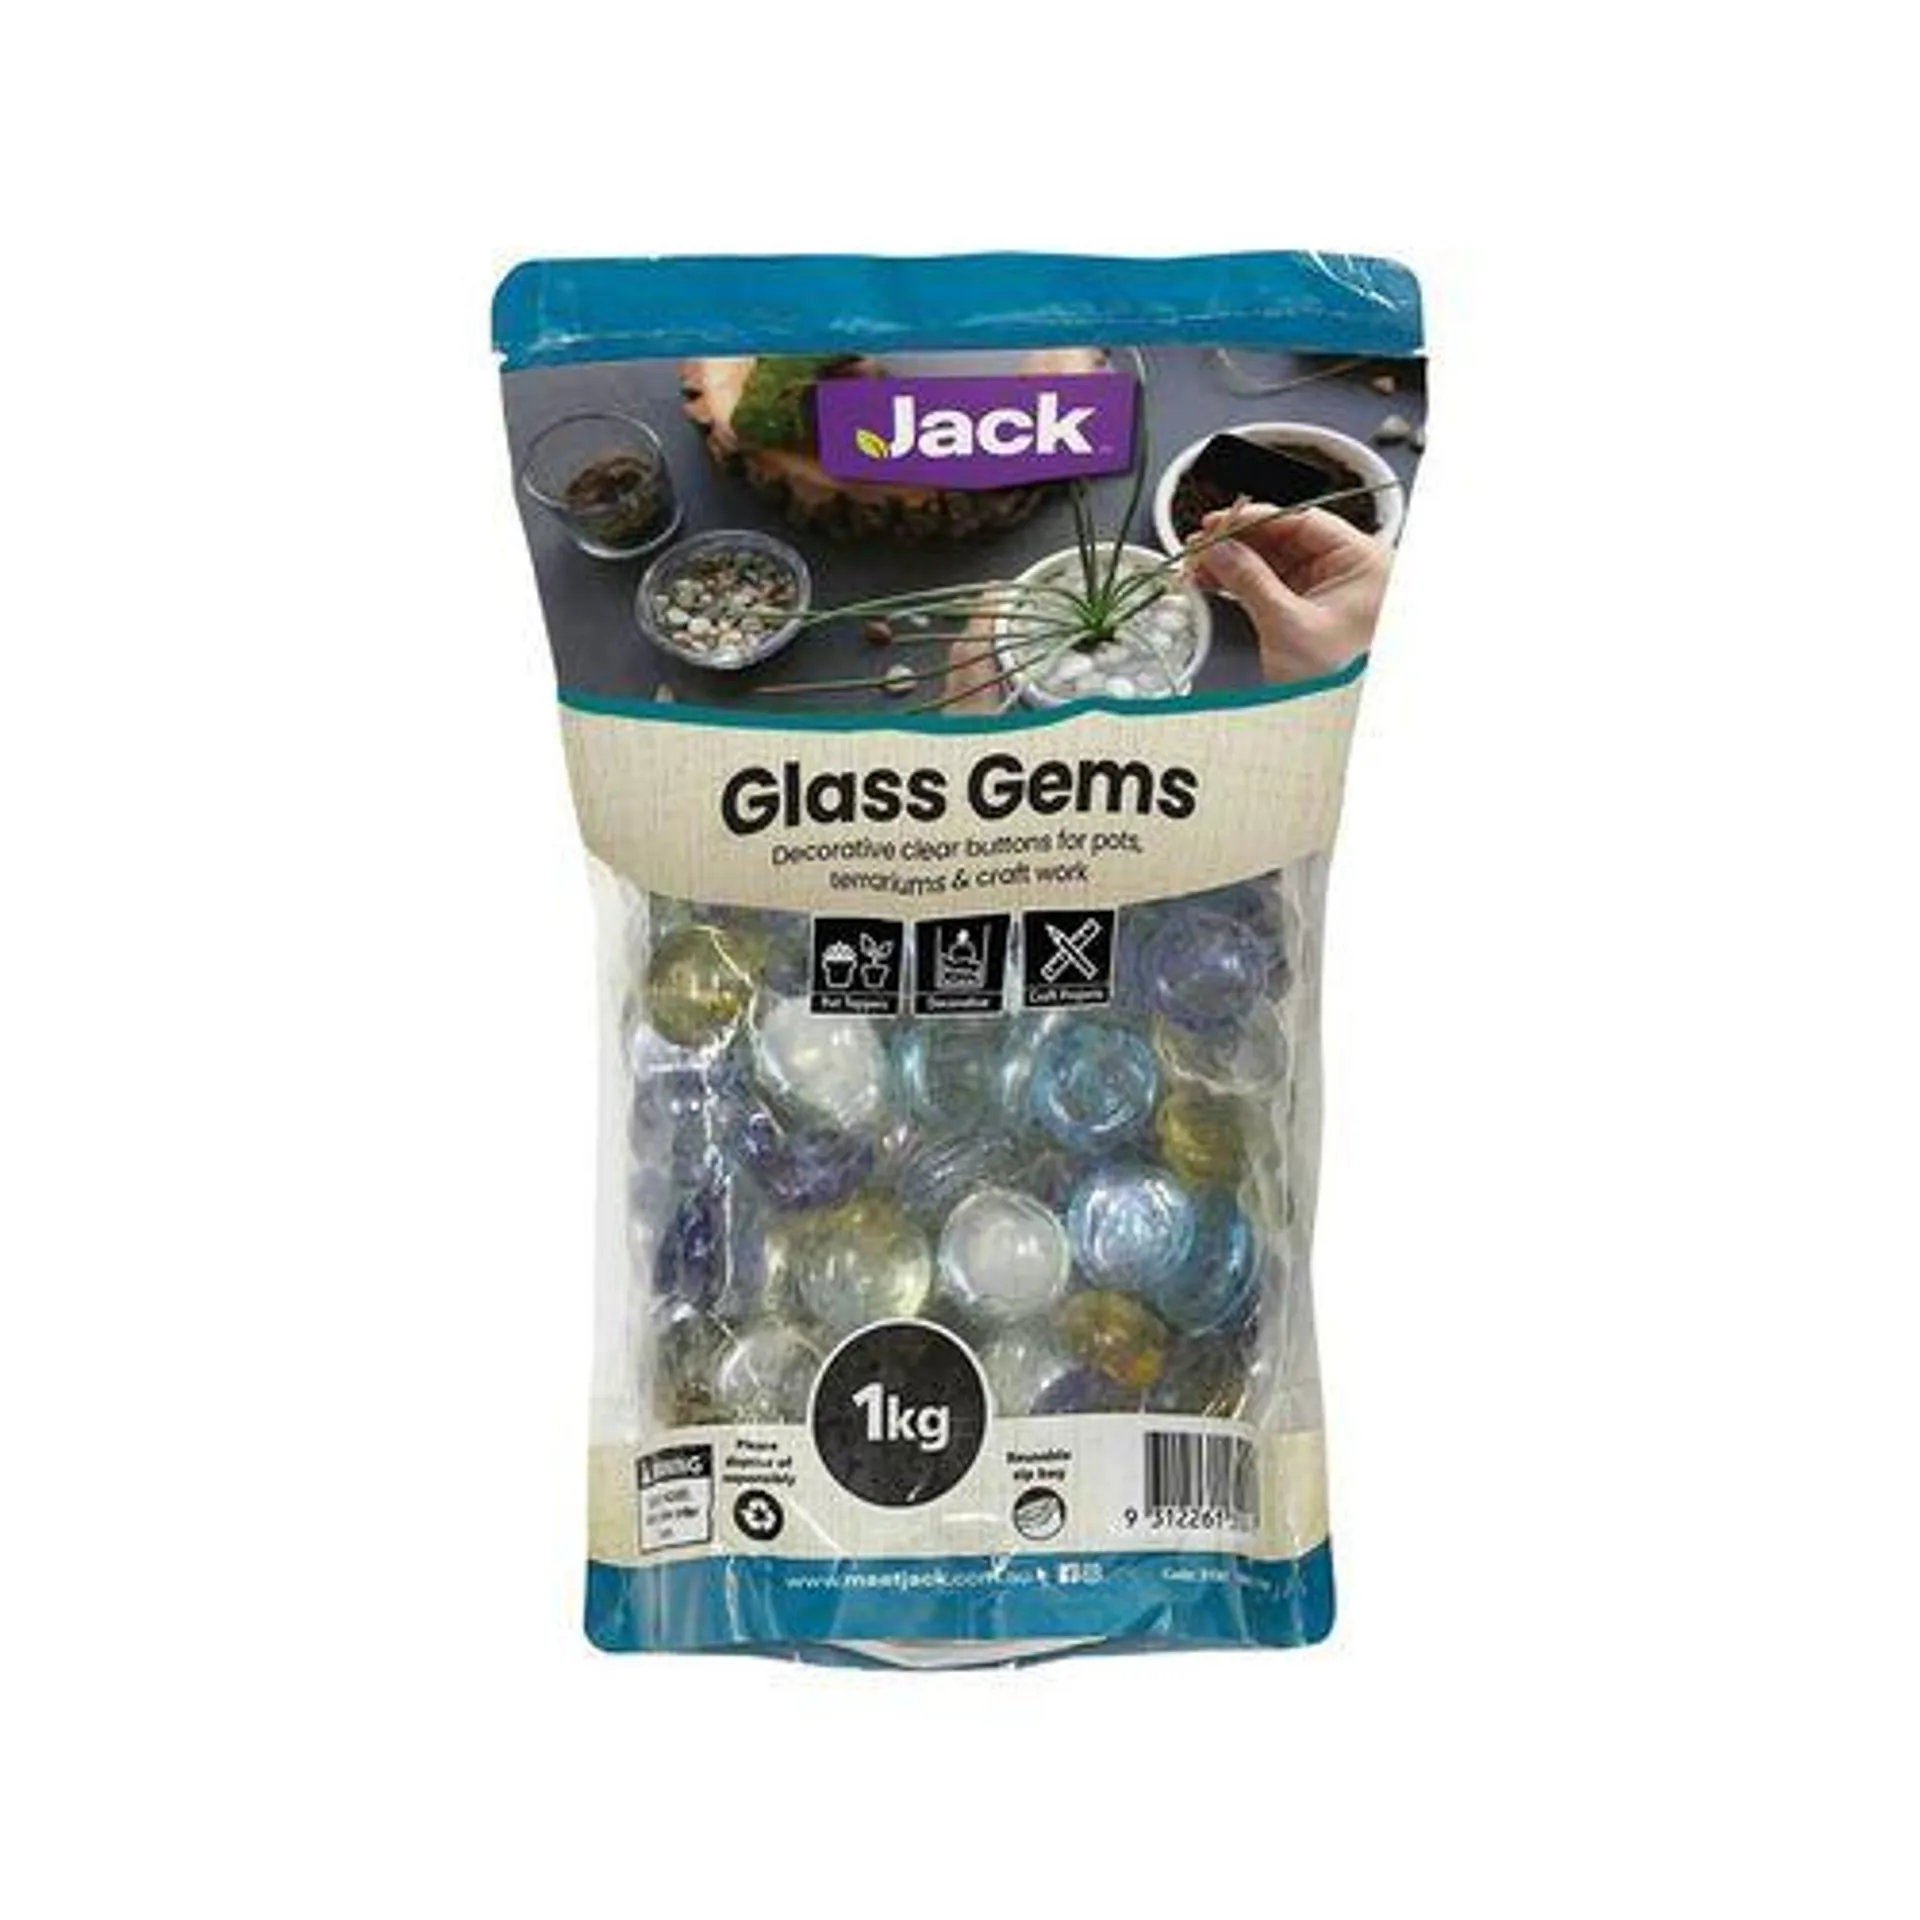 Jack 1kg Clear Glass Gem Decorative Pebble